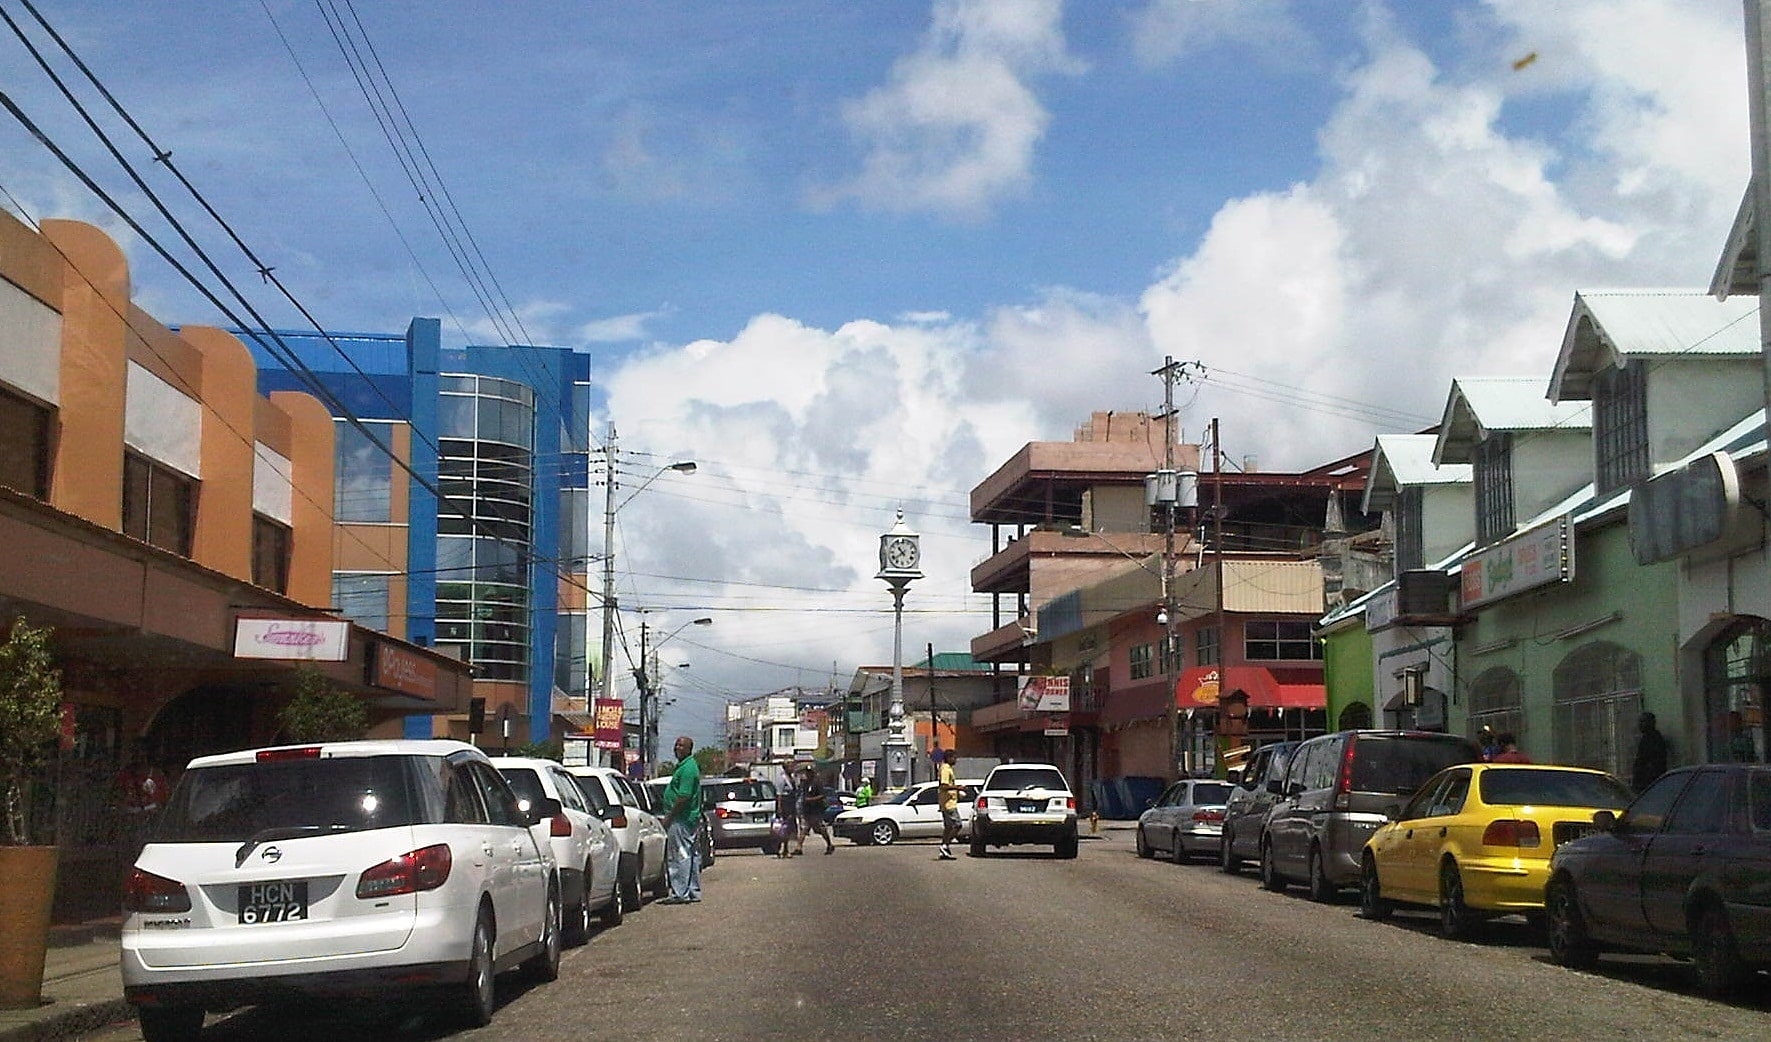 Arima, Trinidad and Tobago